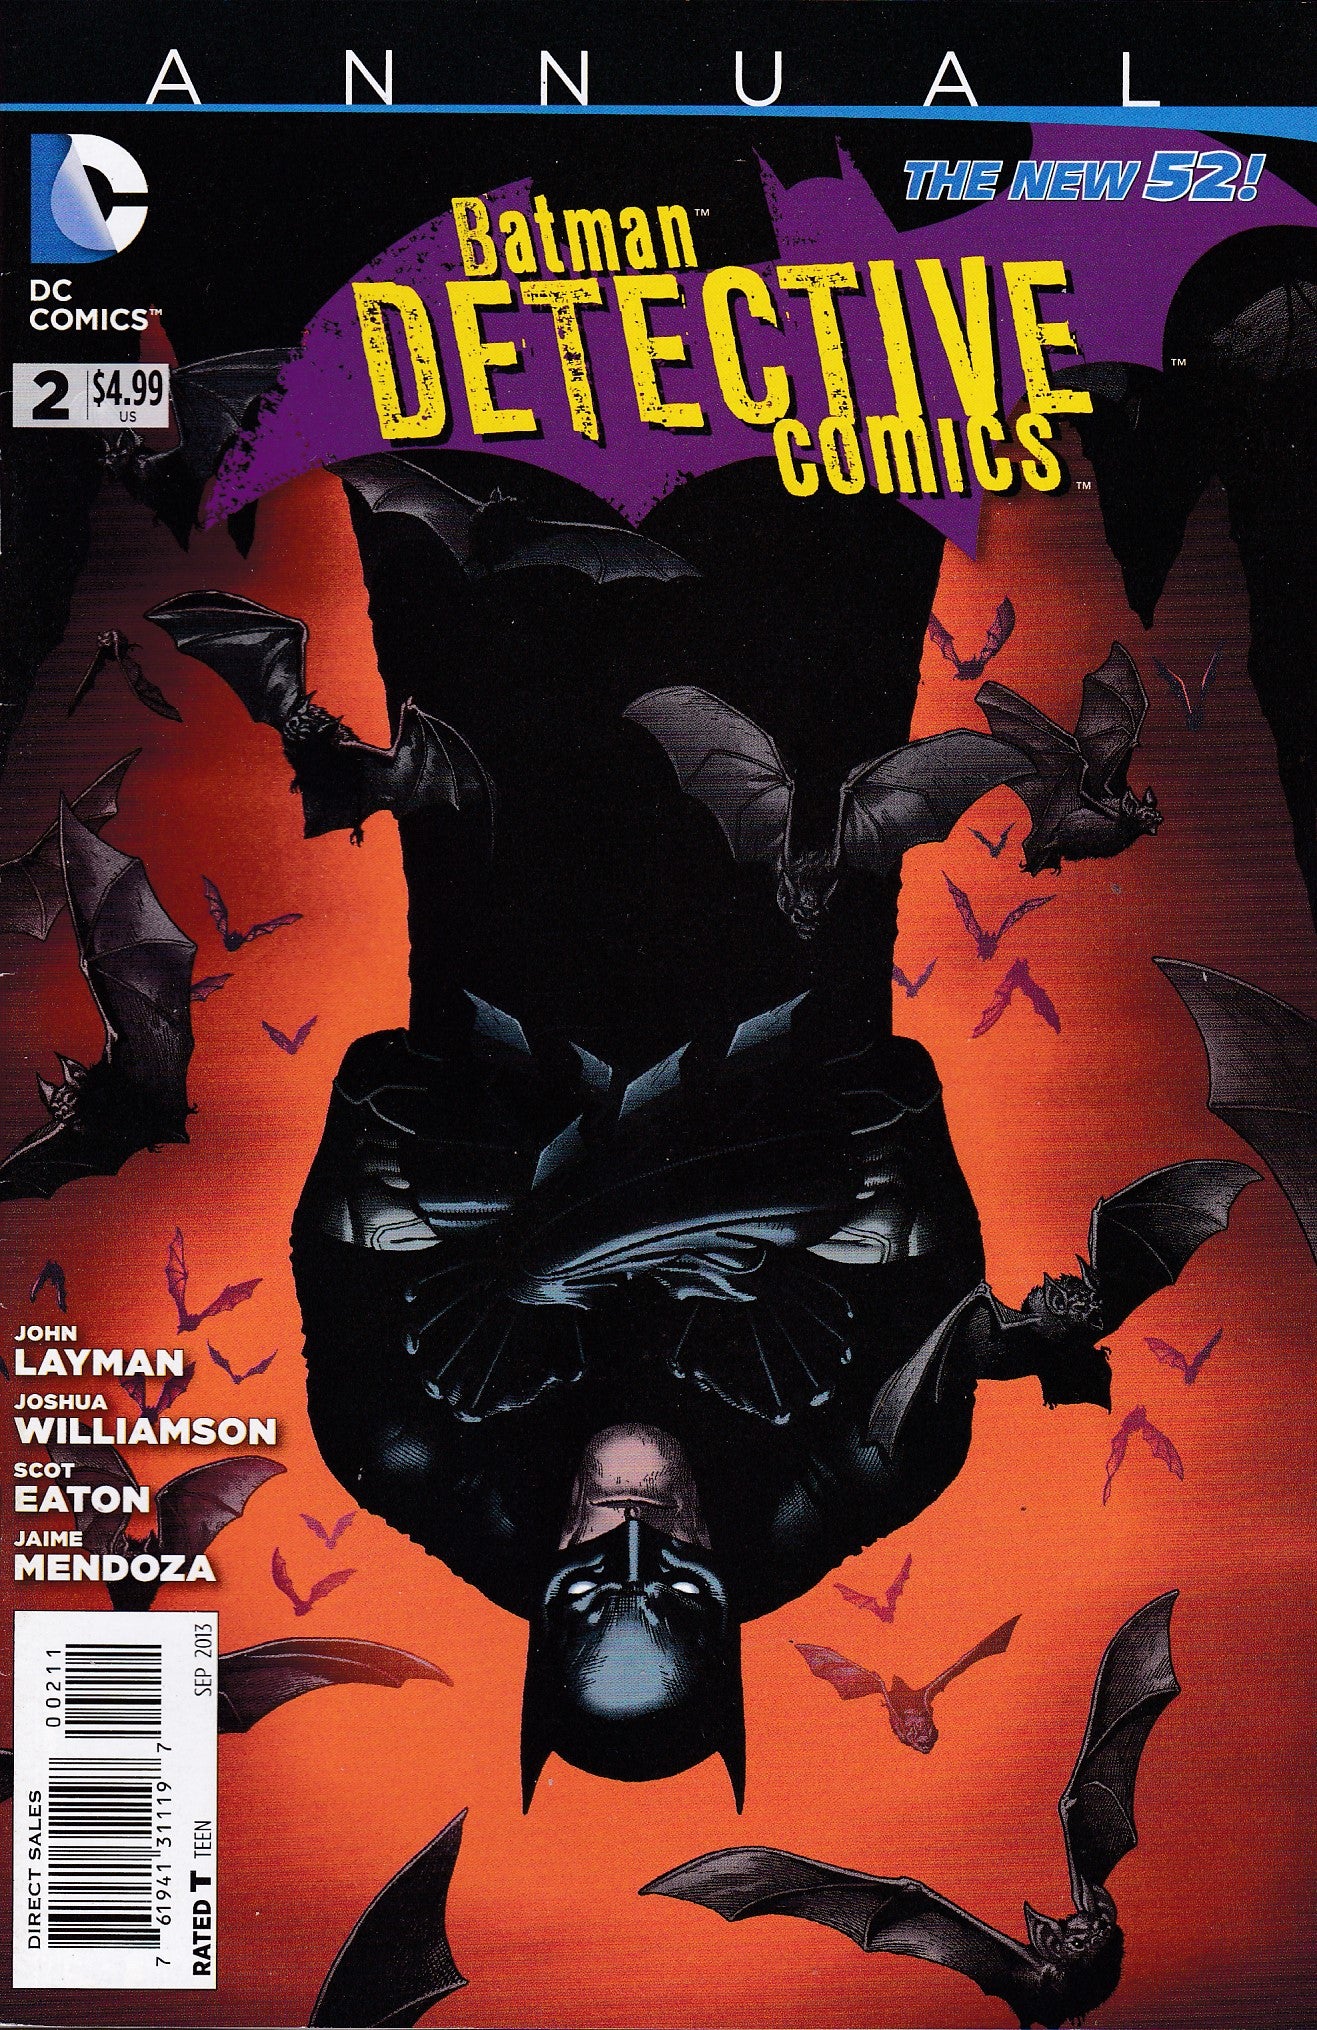 Detective Comics Annual # 2 DC Comics The New 52! Vol. 2 –  